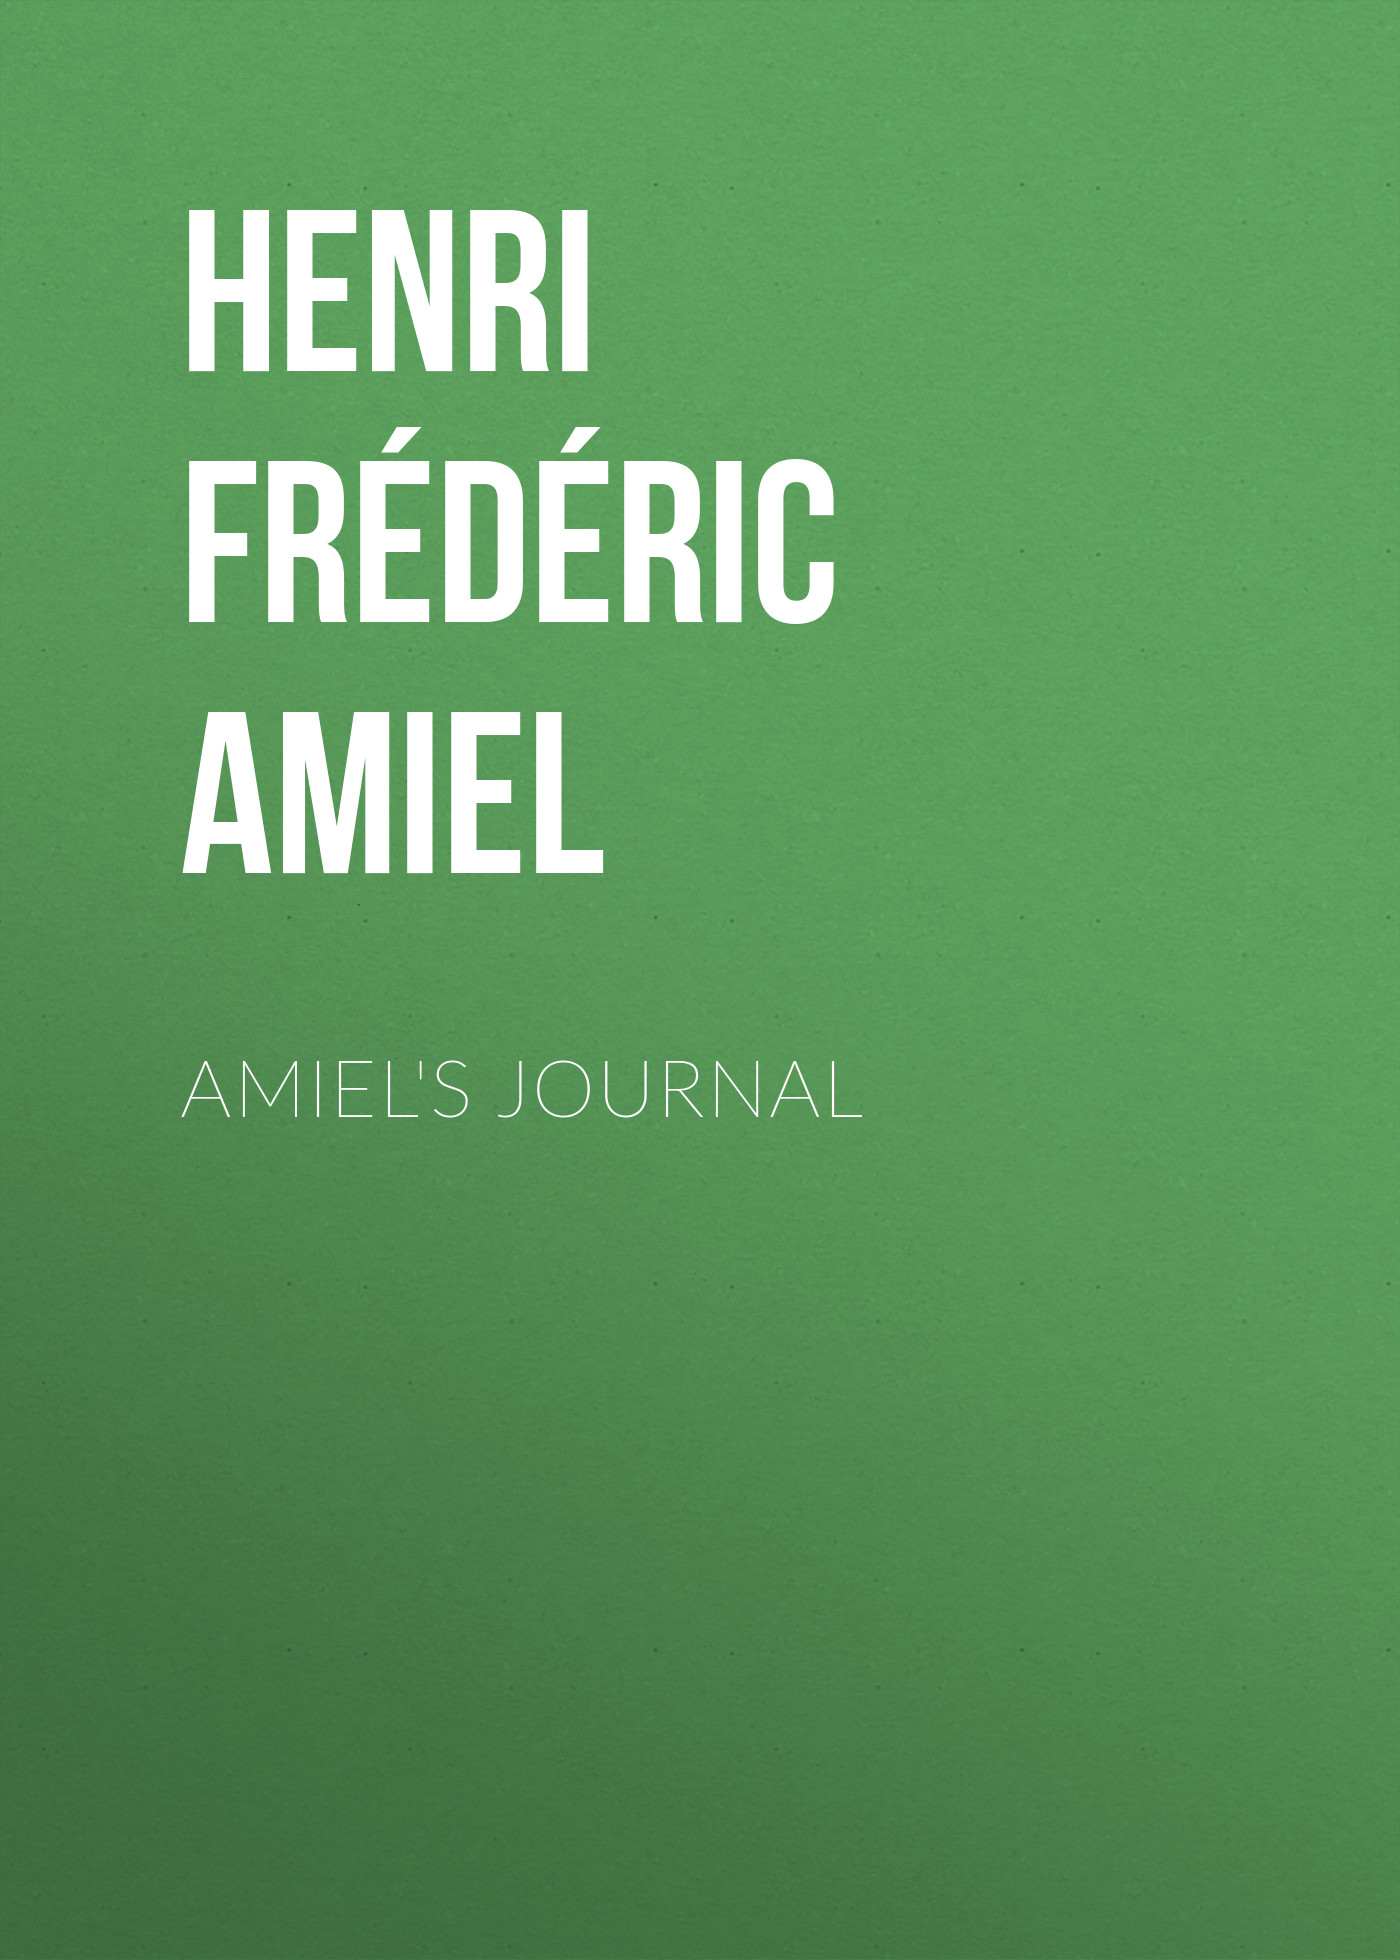 Книга Amiel's Journal из серии , созданная Henri Frédéric Amiel, может относится к жанру Литература 19 века, Зарубежная старинная литература, Зарубежная классика, Зарубежные любовные романы. Стоимость электронной книги Amiel's Journal с идентификатором 38306905 составляет 0 руб.